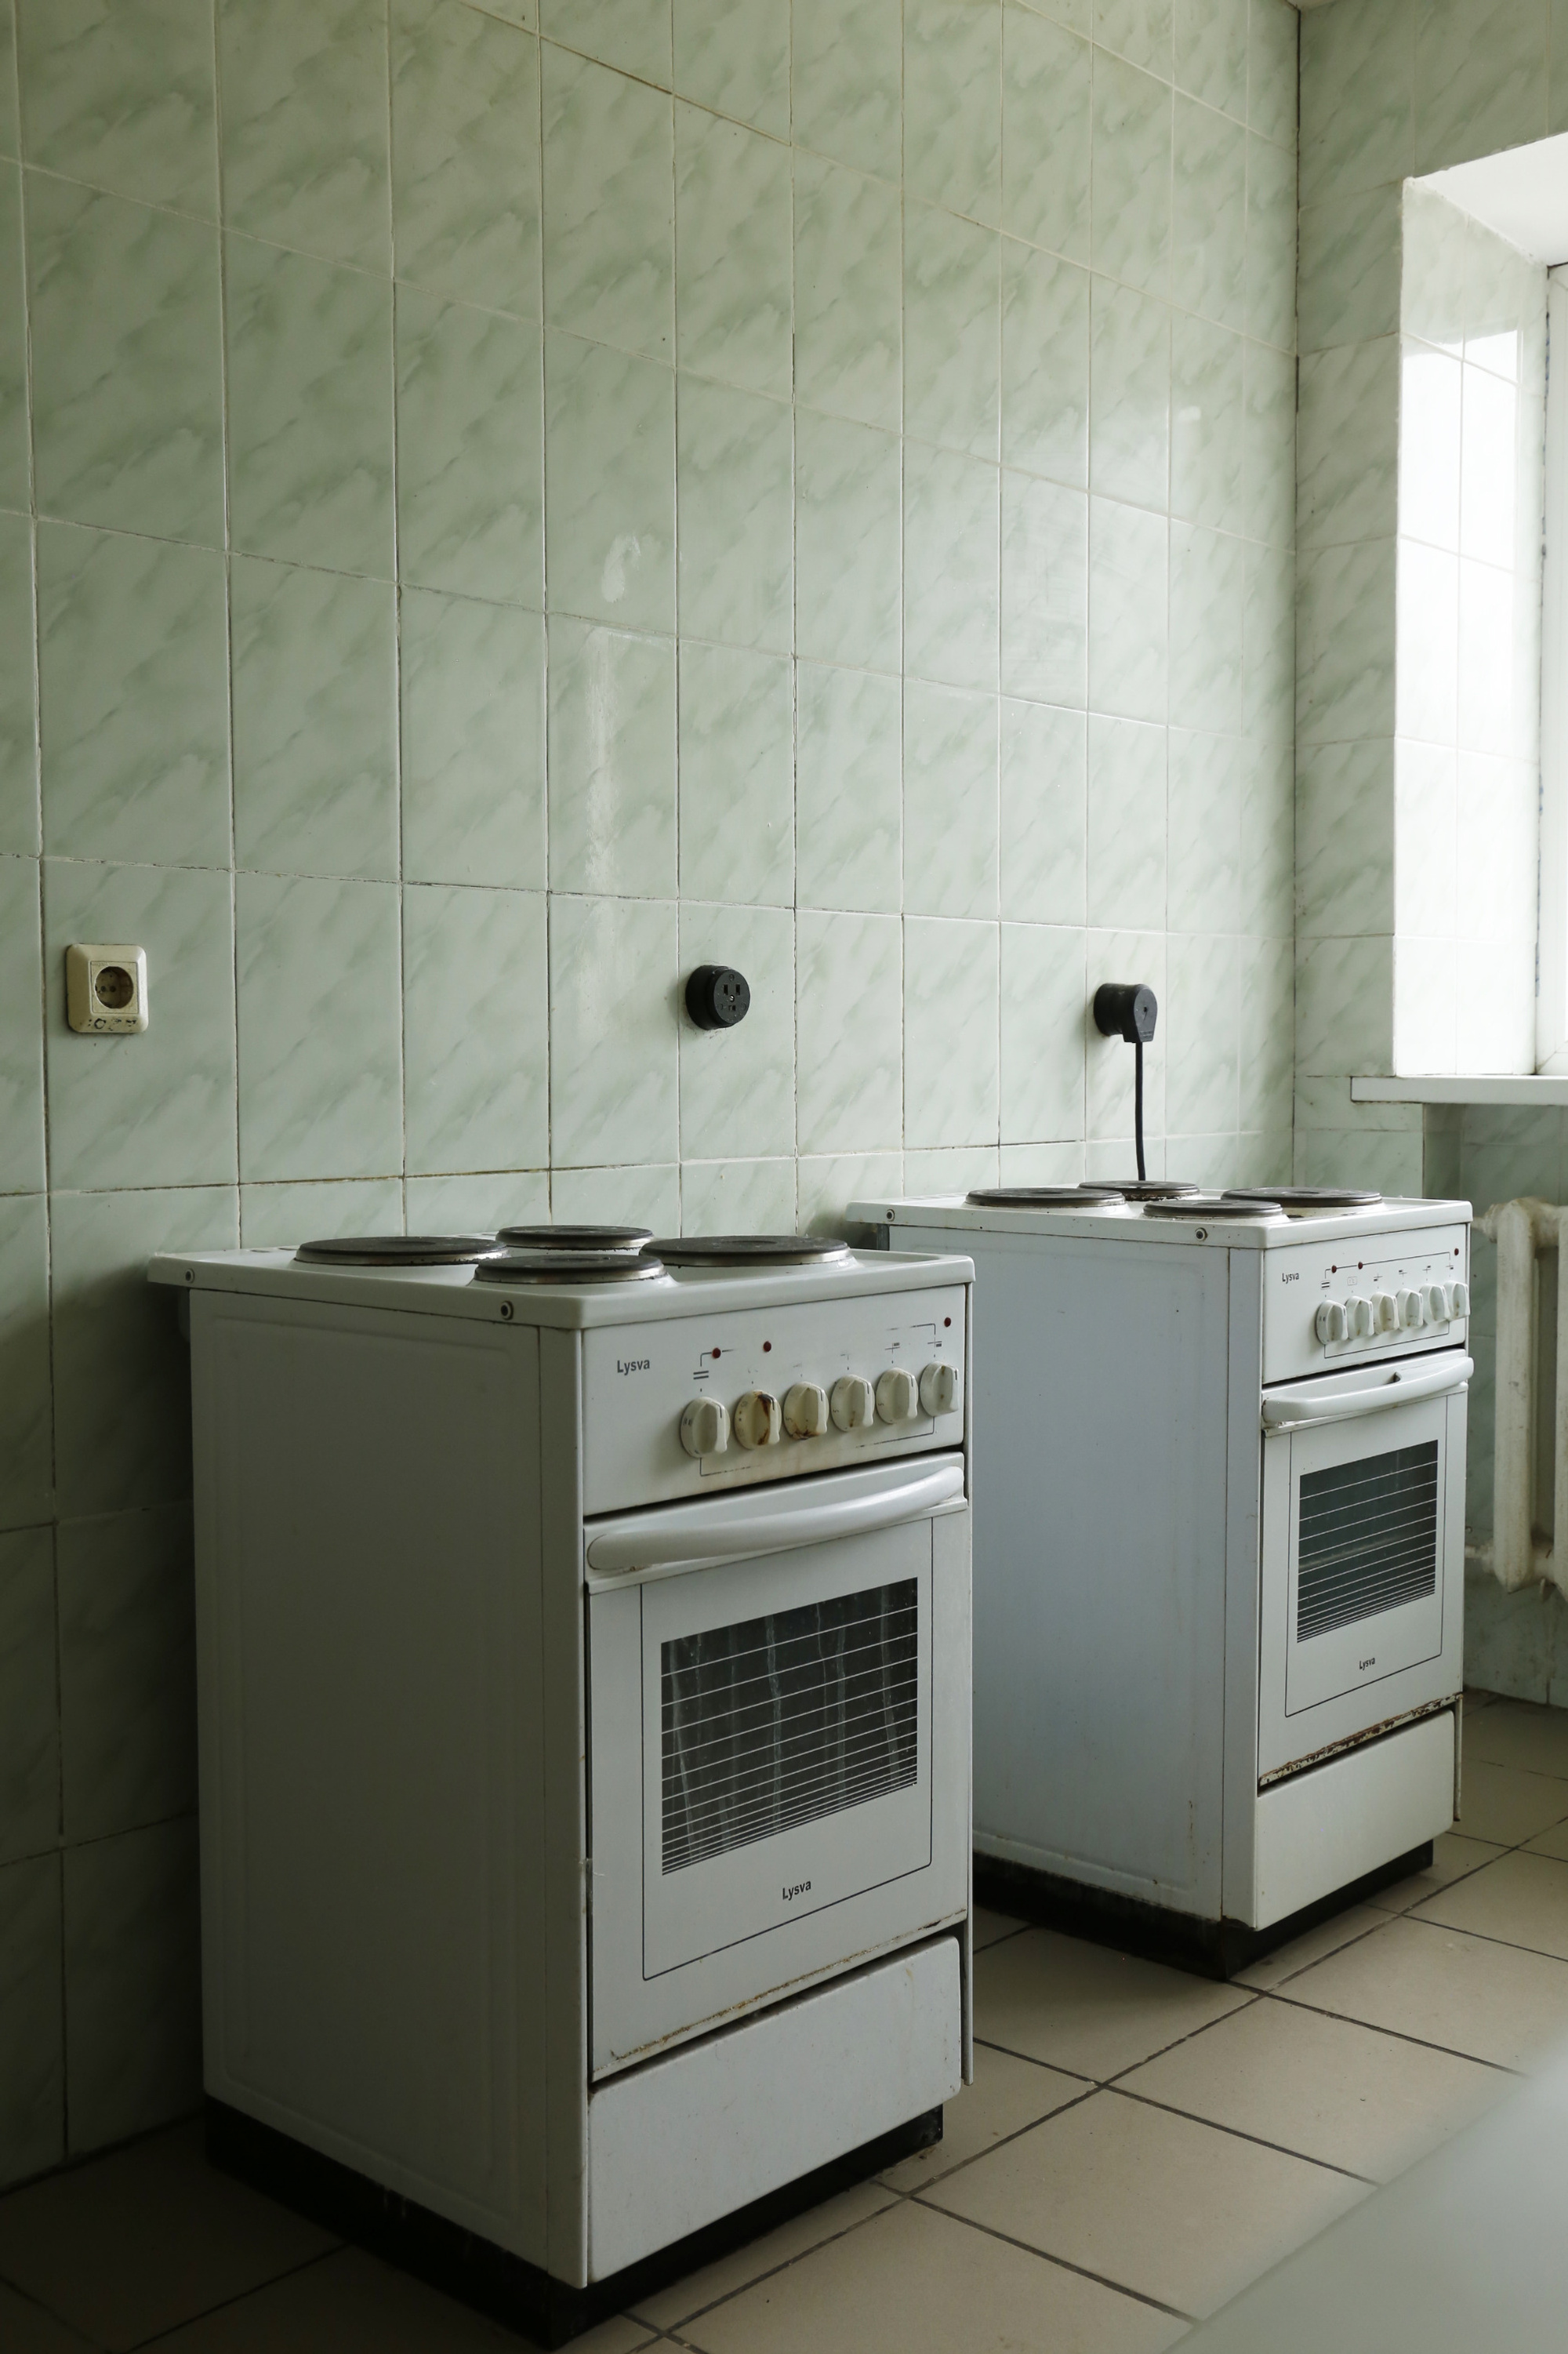 Электрические плиты на кухне общежития <nobr class="_">№ 4</nobr>